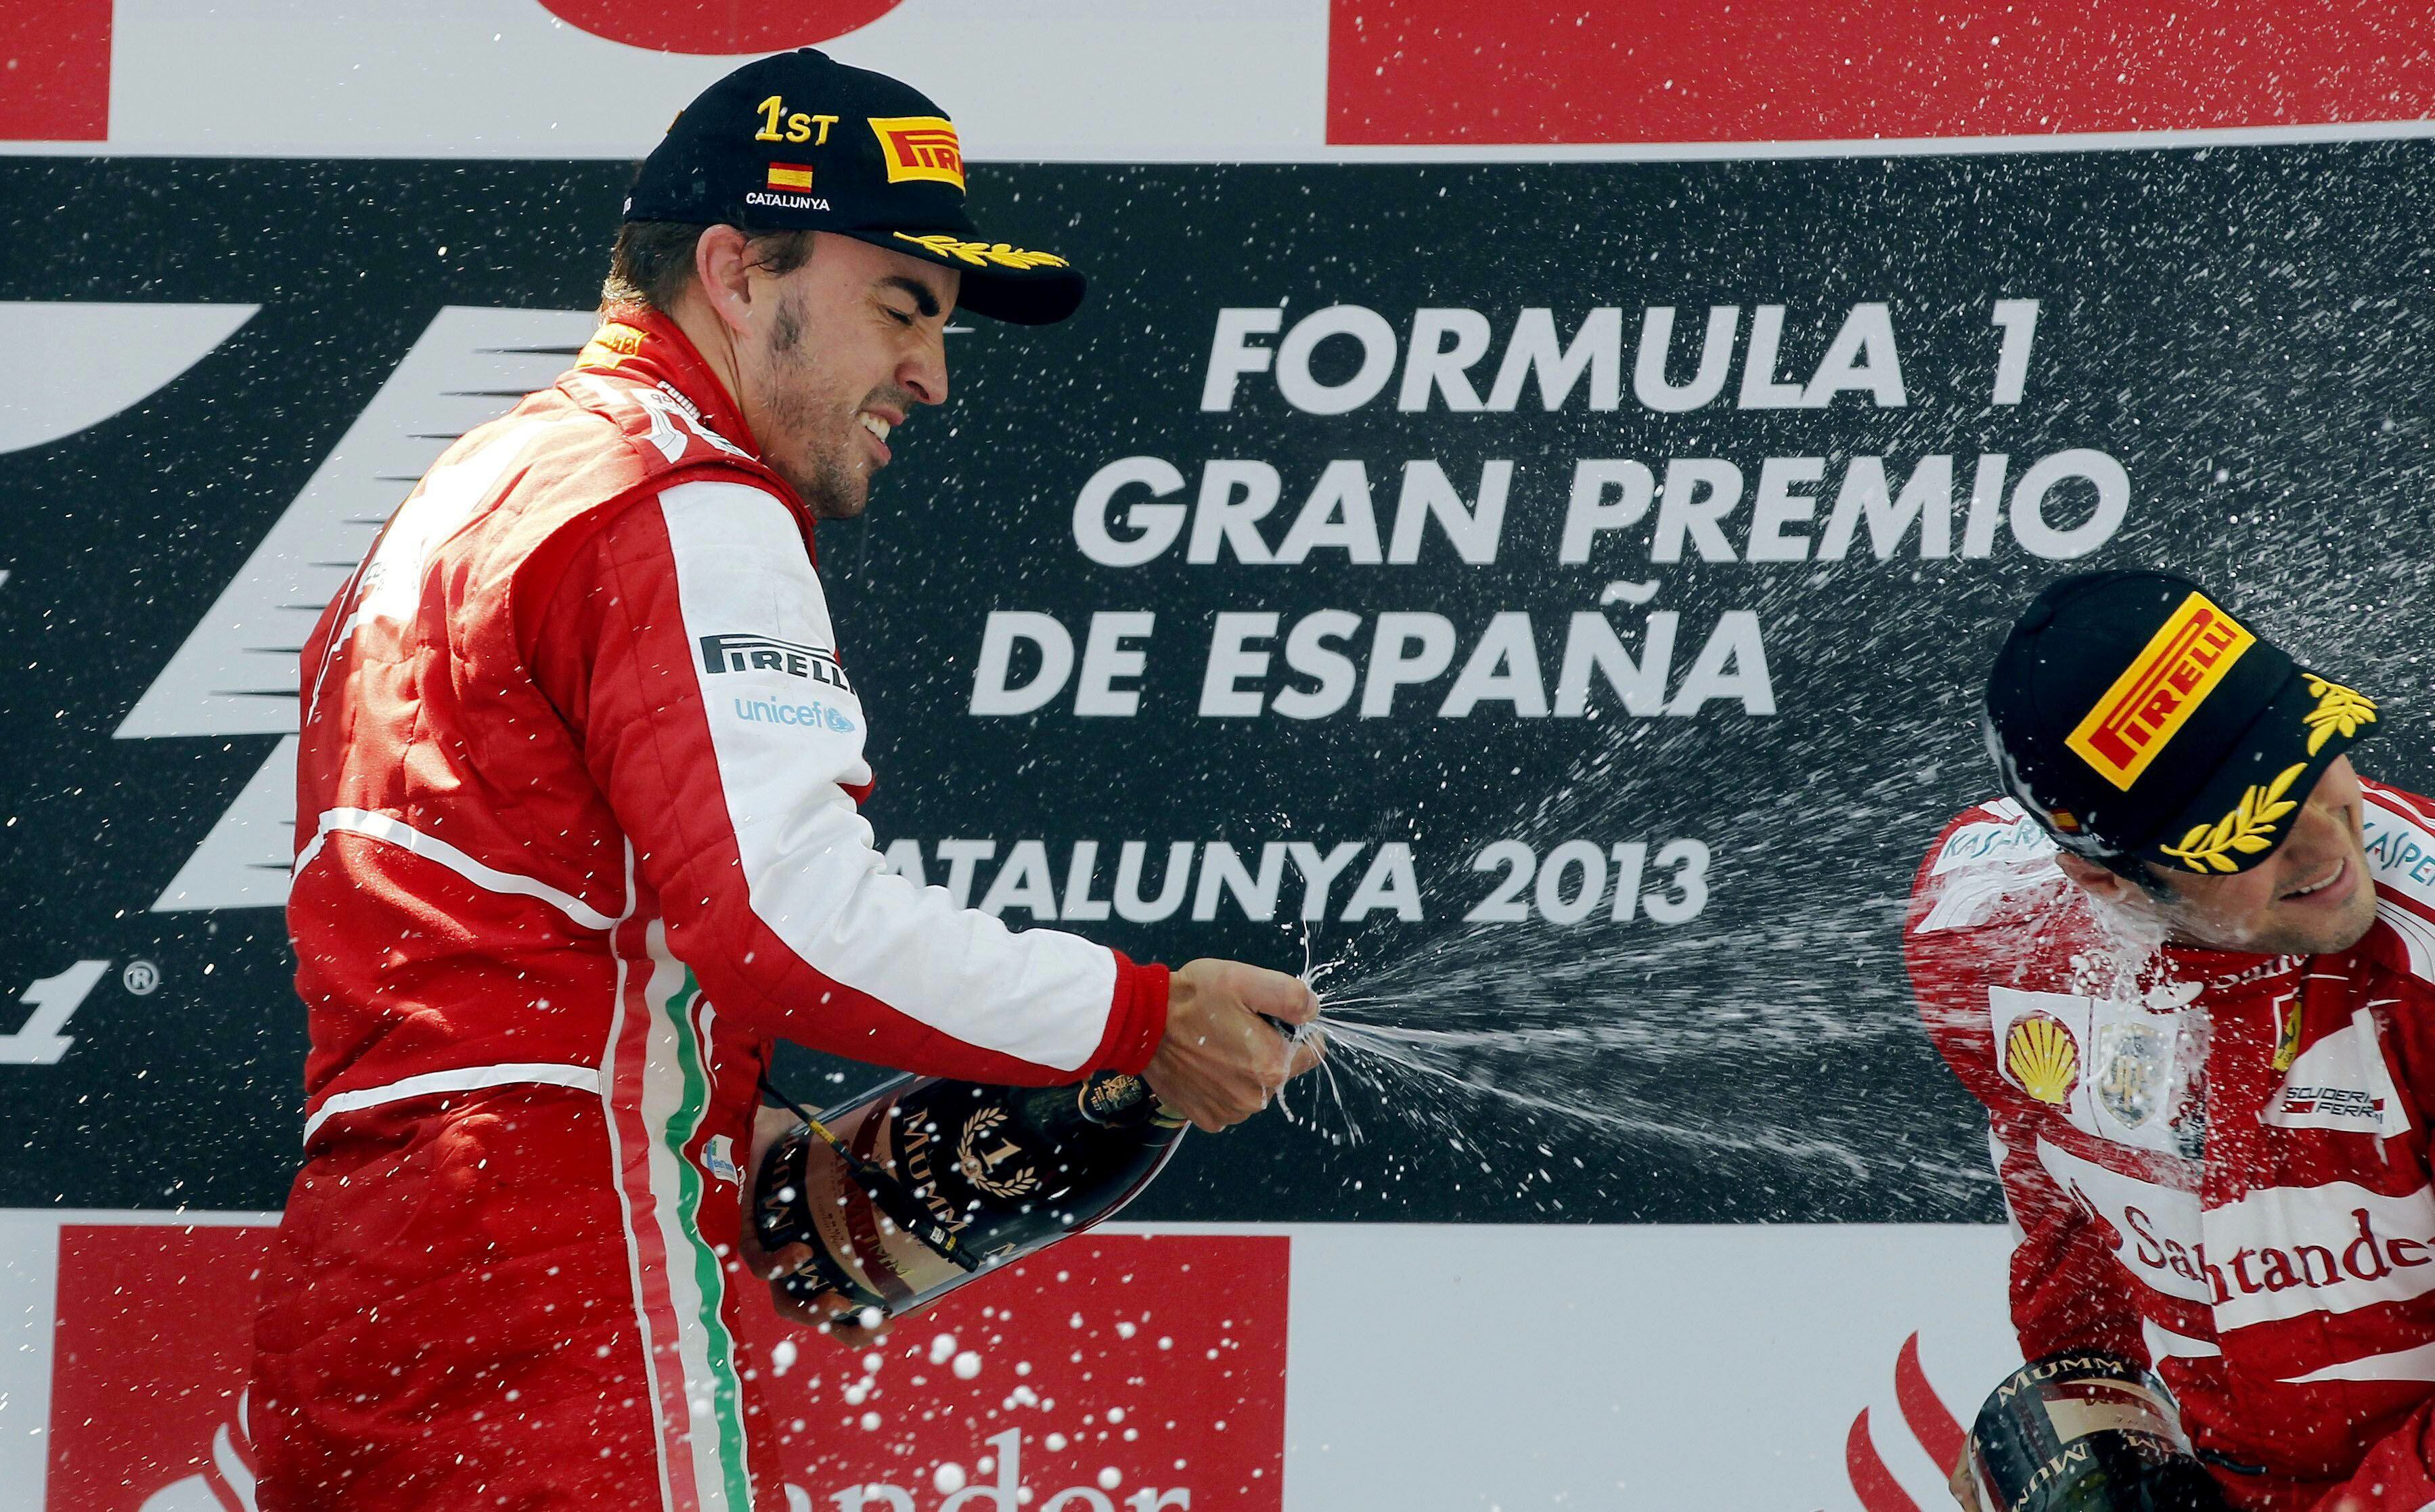 GRA238 MONTMELÓ (BARCELONA), 12/05/2013.- El piloto español de Ferrari Fernando Alonso (i) celebra en el podio en presencia de su compañero, el brasileño Felipe Massa, tercero, su victoria en el Gran Premio de España que se celebra en el Circuito de Catalunya en Montmelo (Barcelona). EFE/Andreu Dalmau